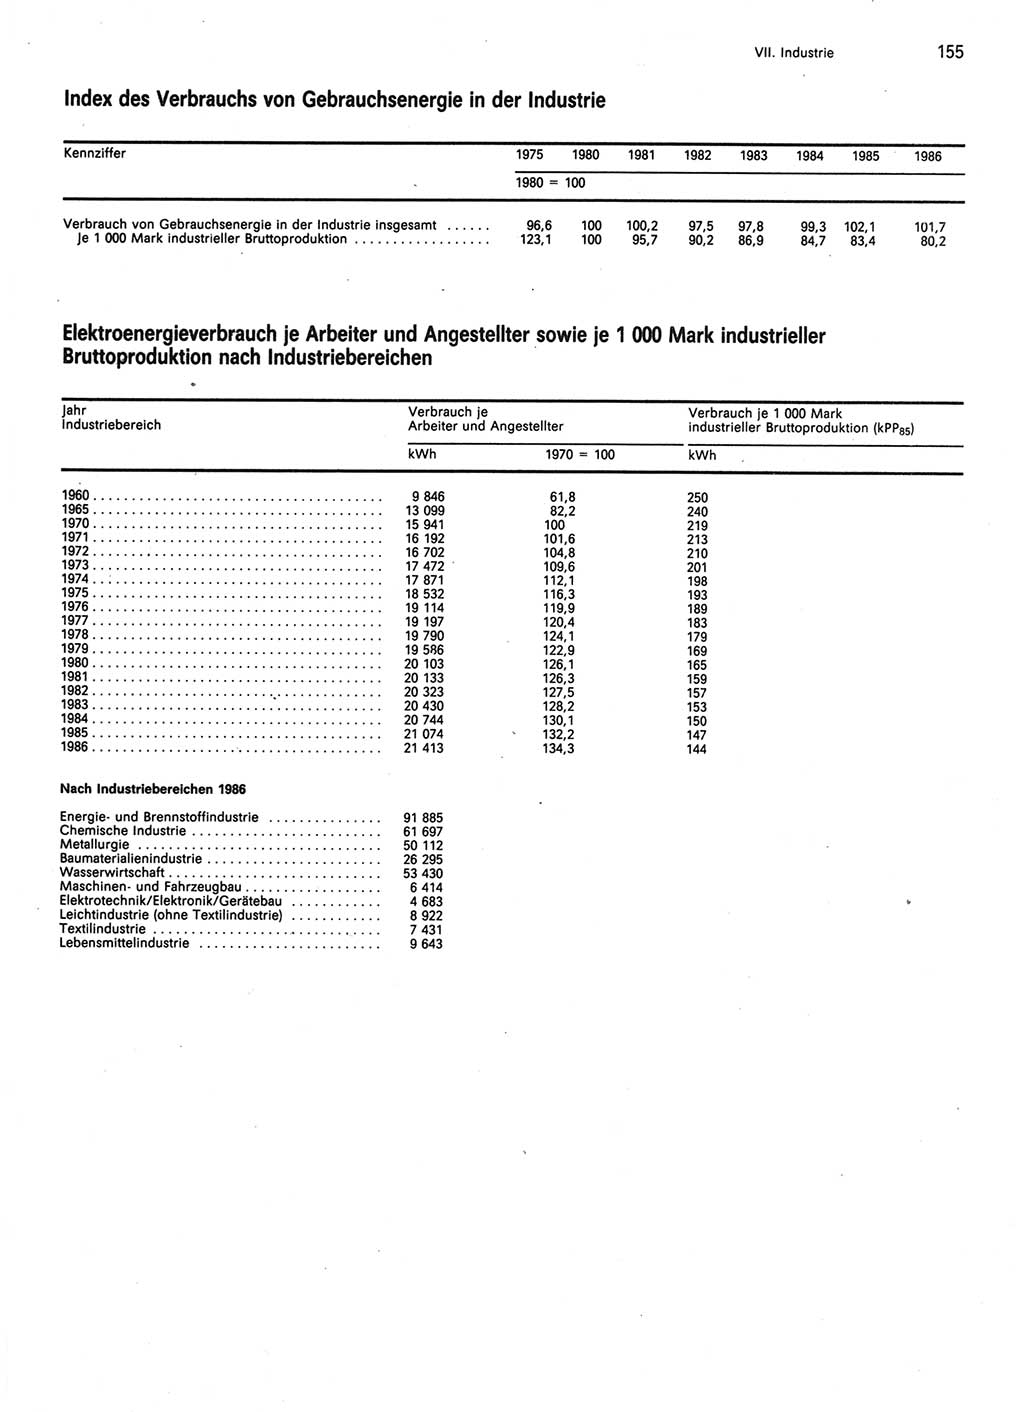 Statistisches Jahrbuch der Deutschen Demokratischen Republik (DDR) 1987, Seite 155 (Stat. Jb. DDR 1987, S. 155)